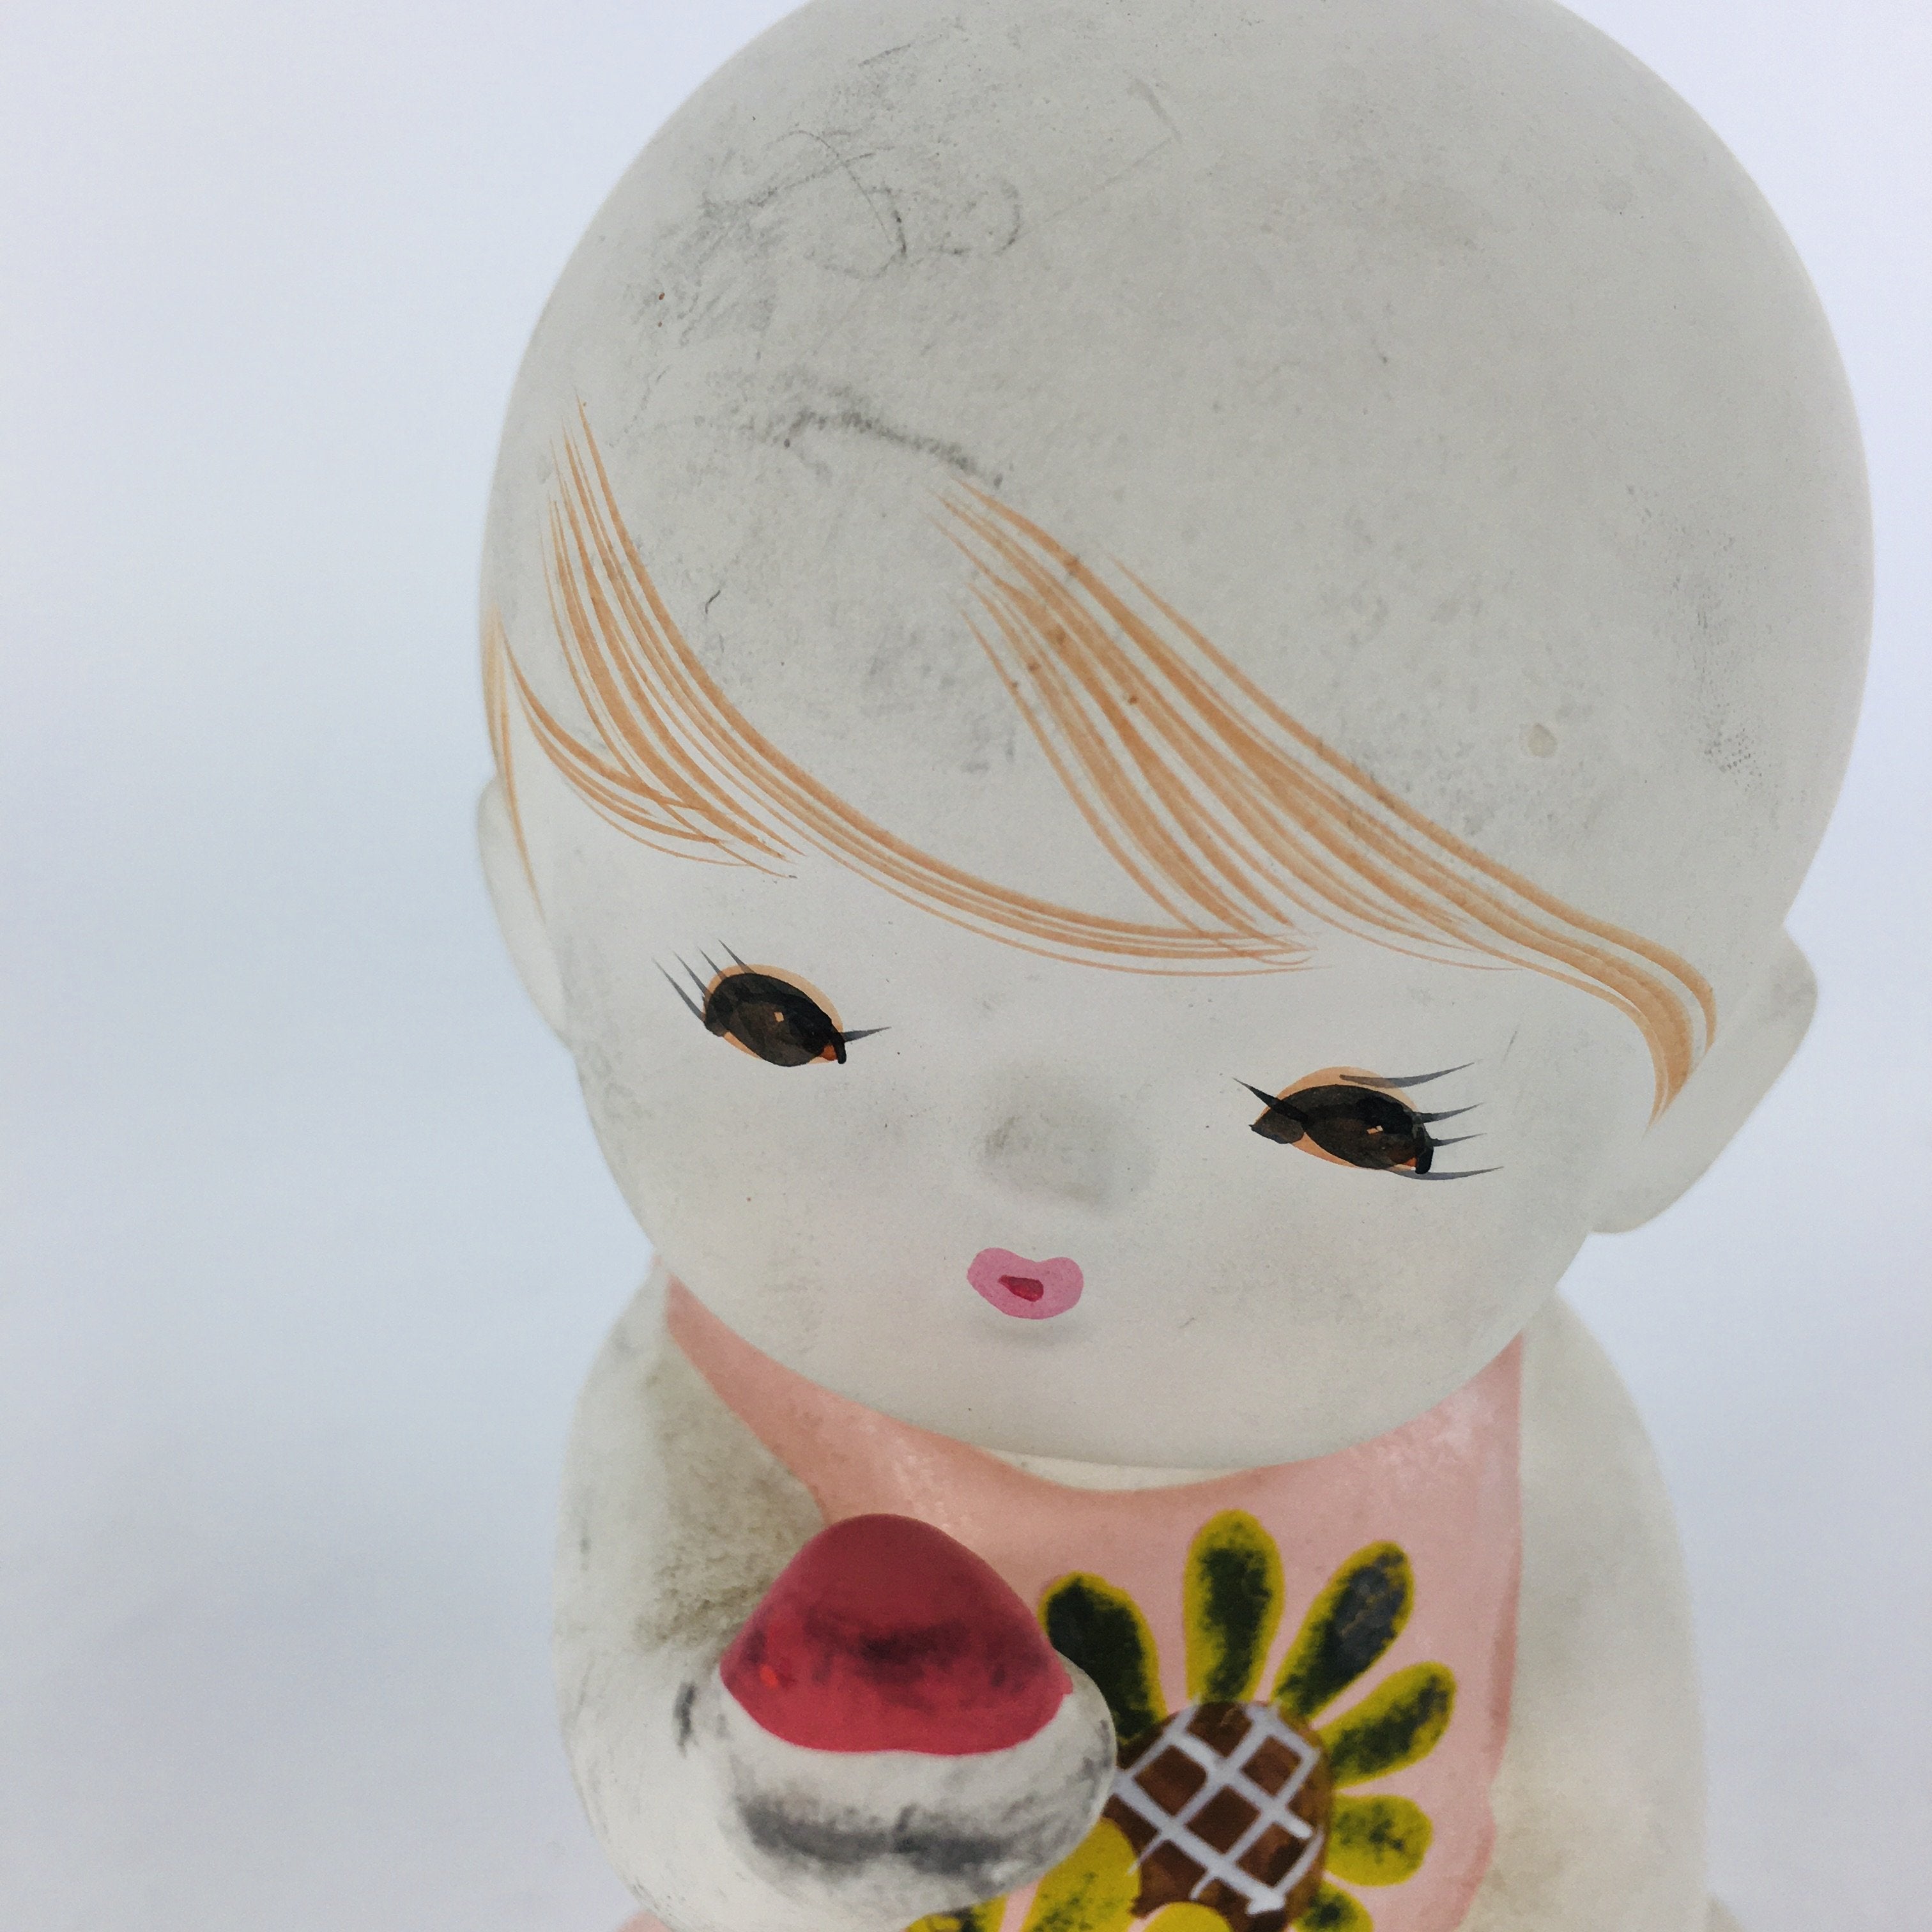 Japanese Plaster Little Girl Figurine Vtg Pottery Statue White Doll Kodomo BD654